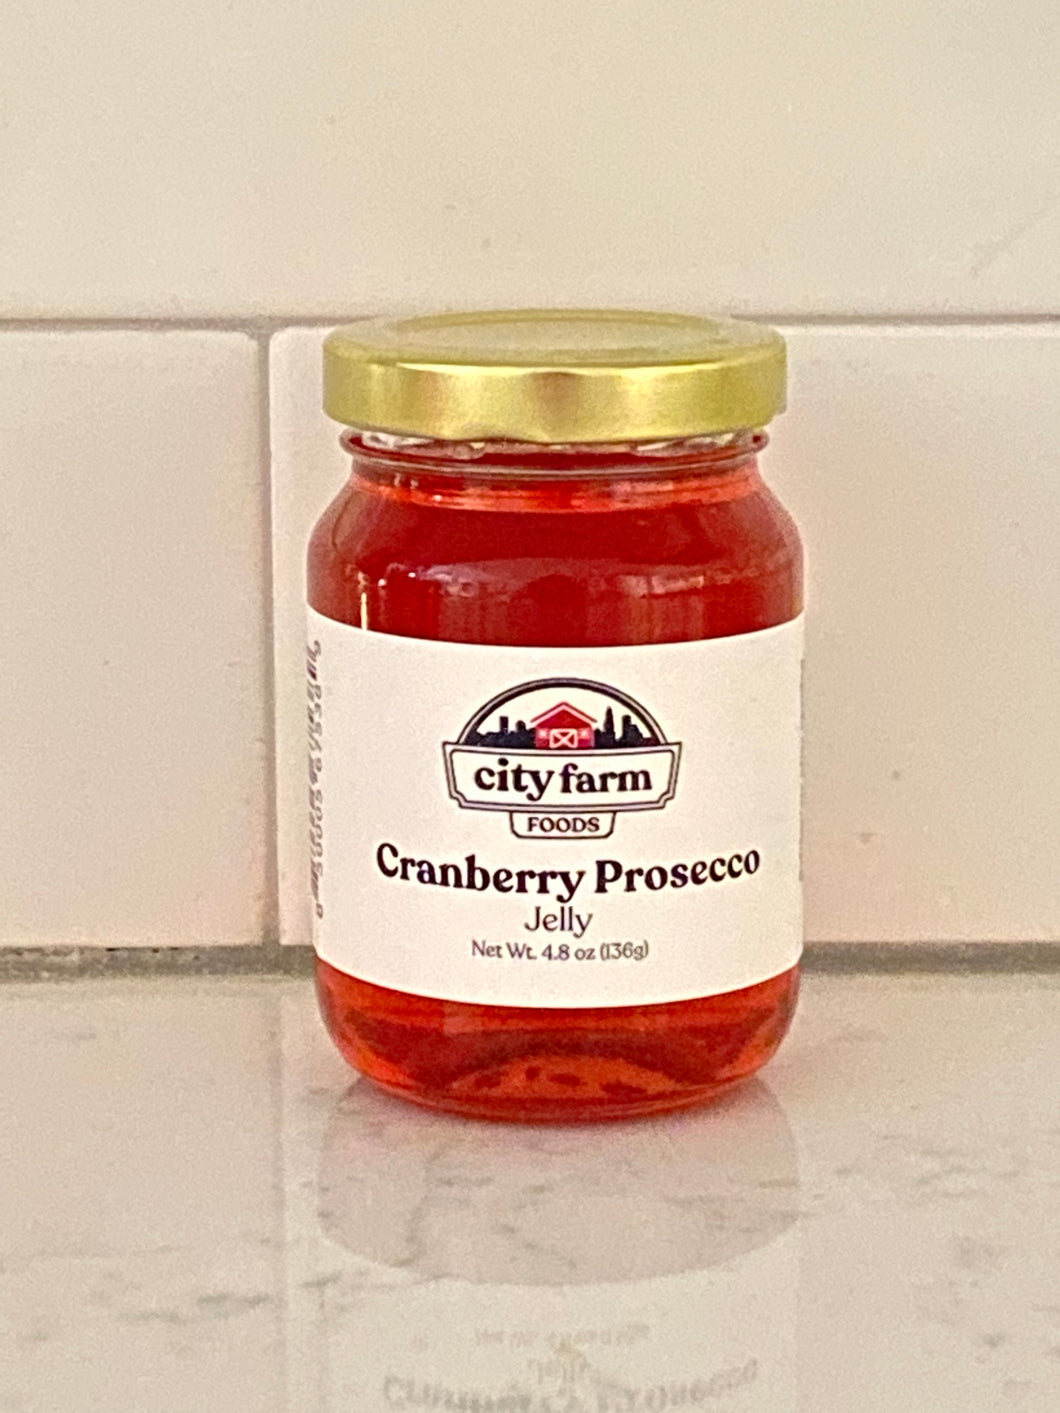 Cranberry Prosecco Jelly